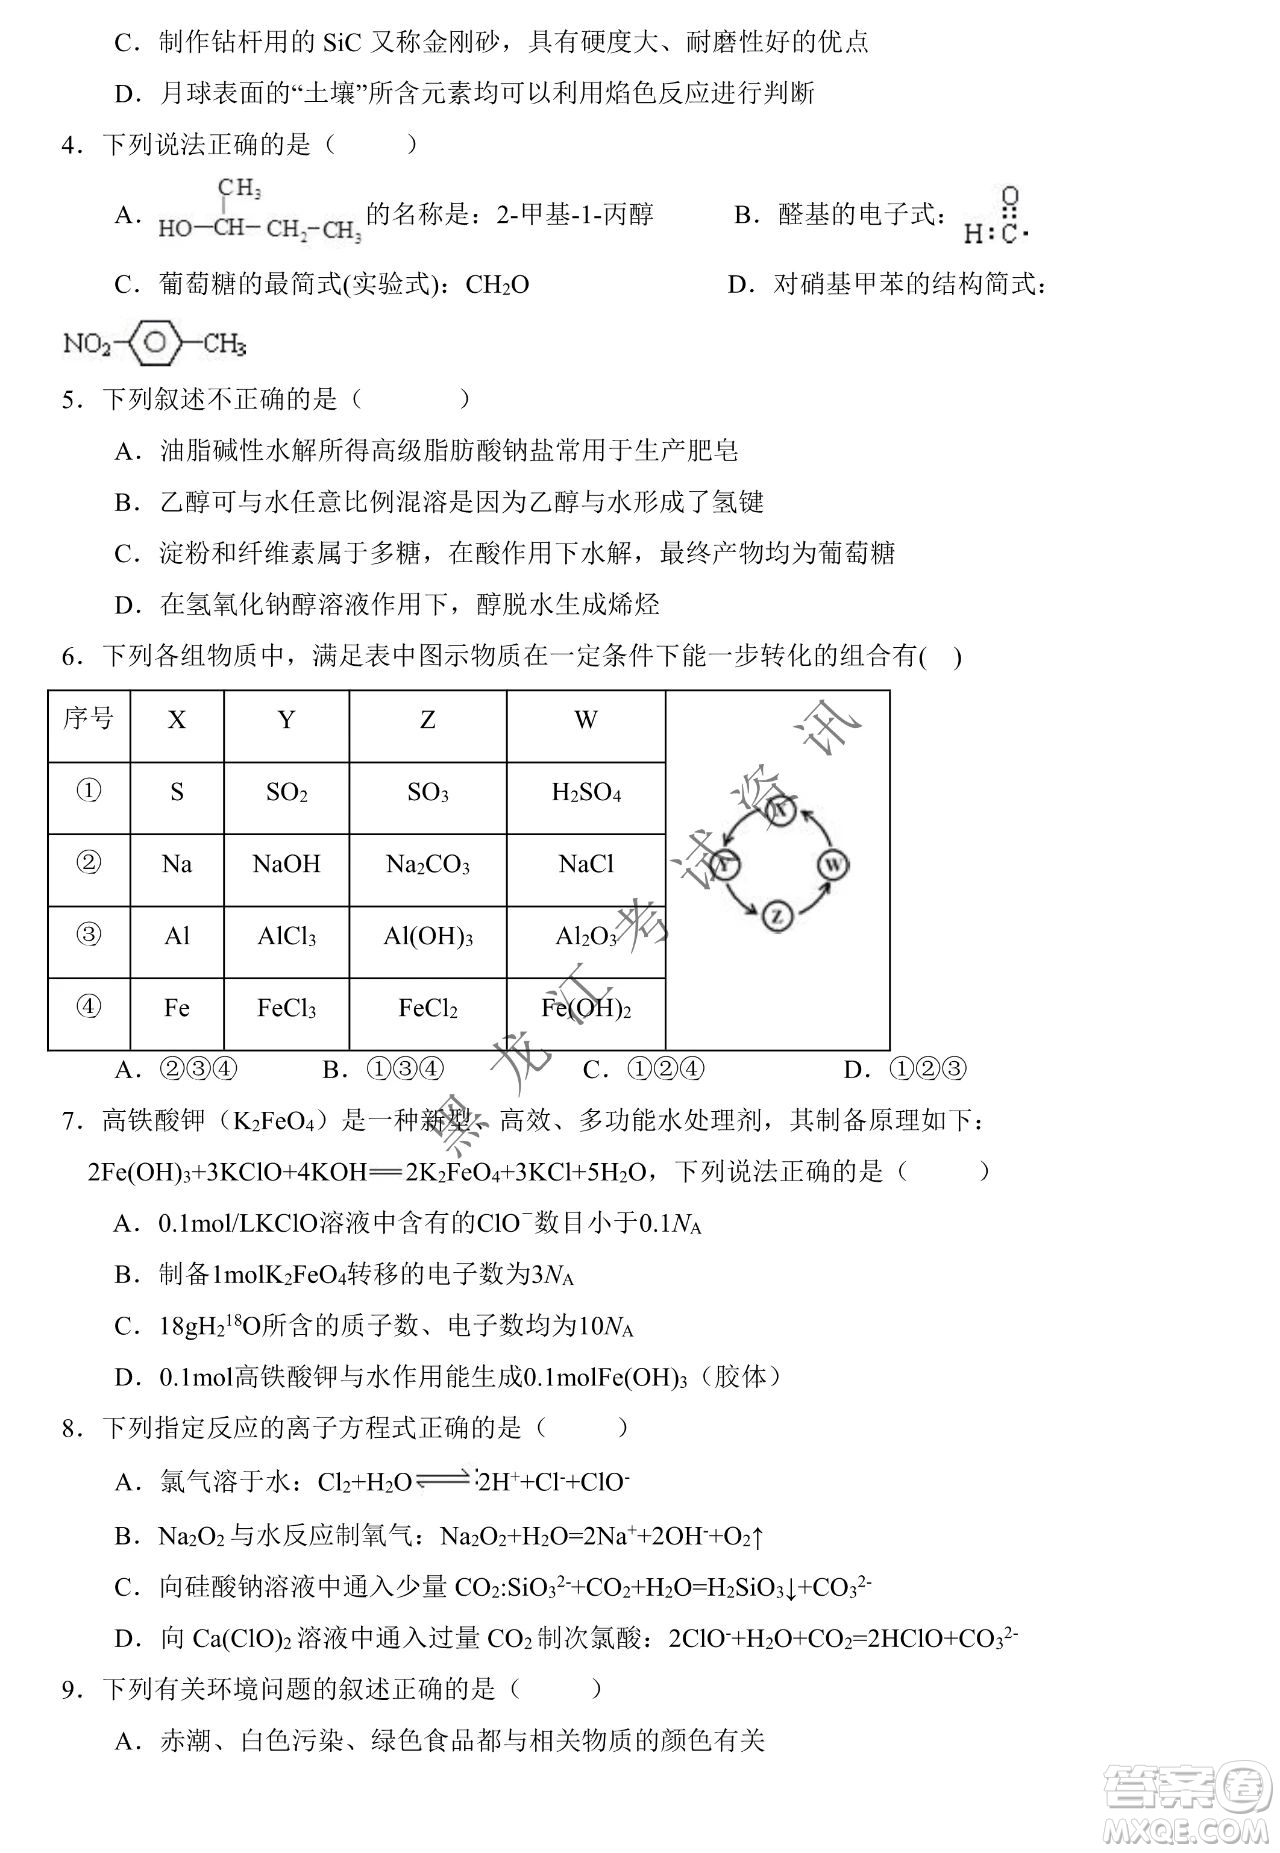 大庆市铁人中学2019级高三上学期开学考试化学试题及答案